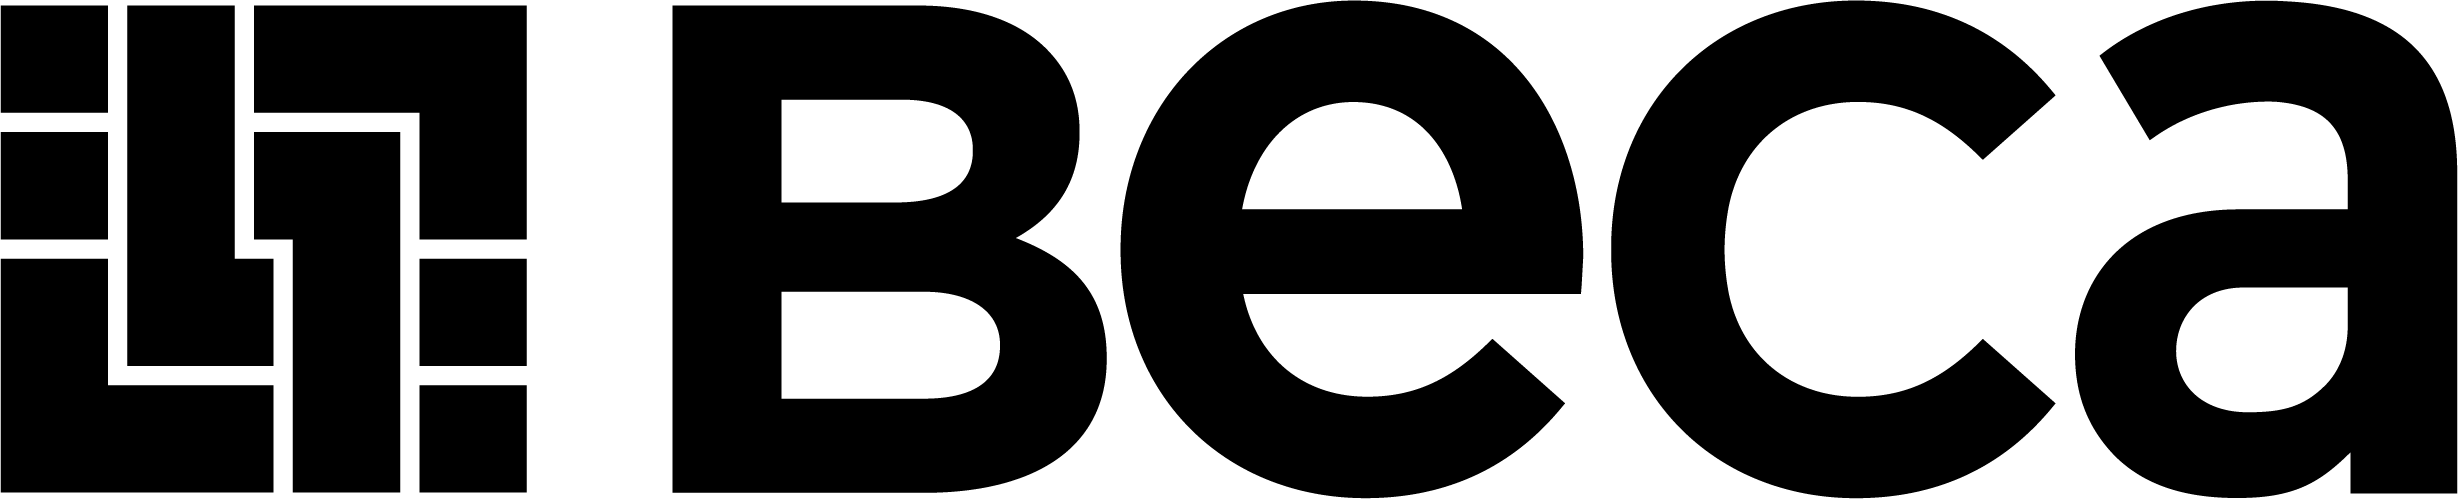 Beca Logo Large